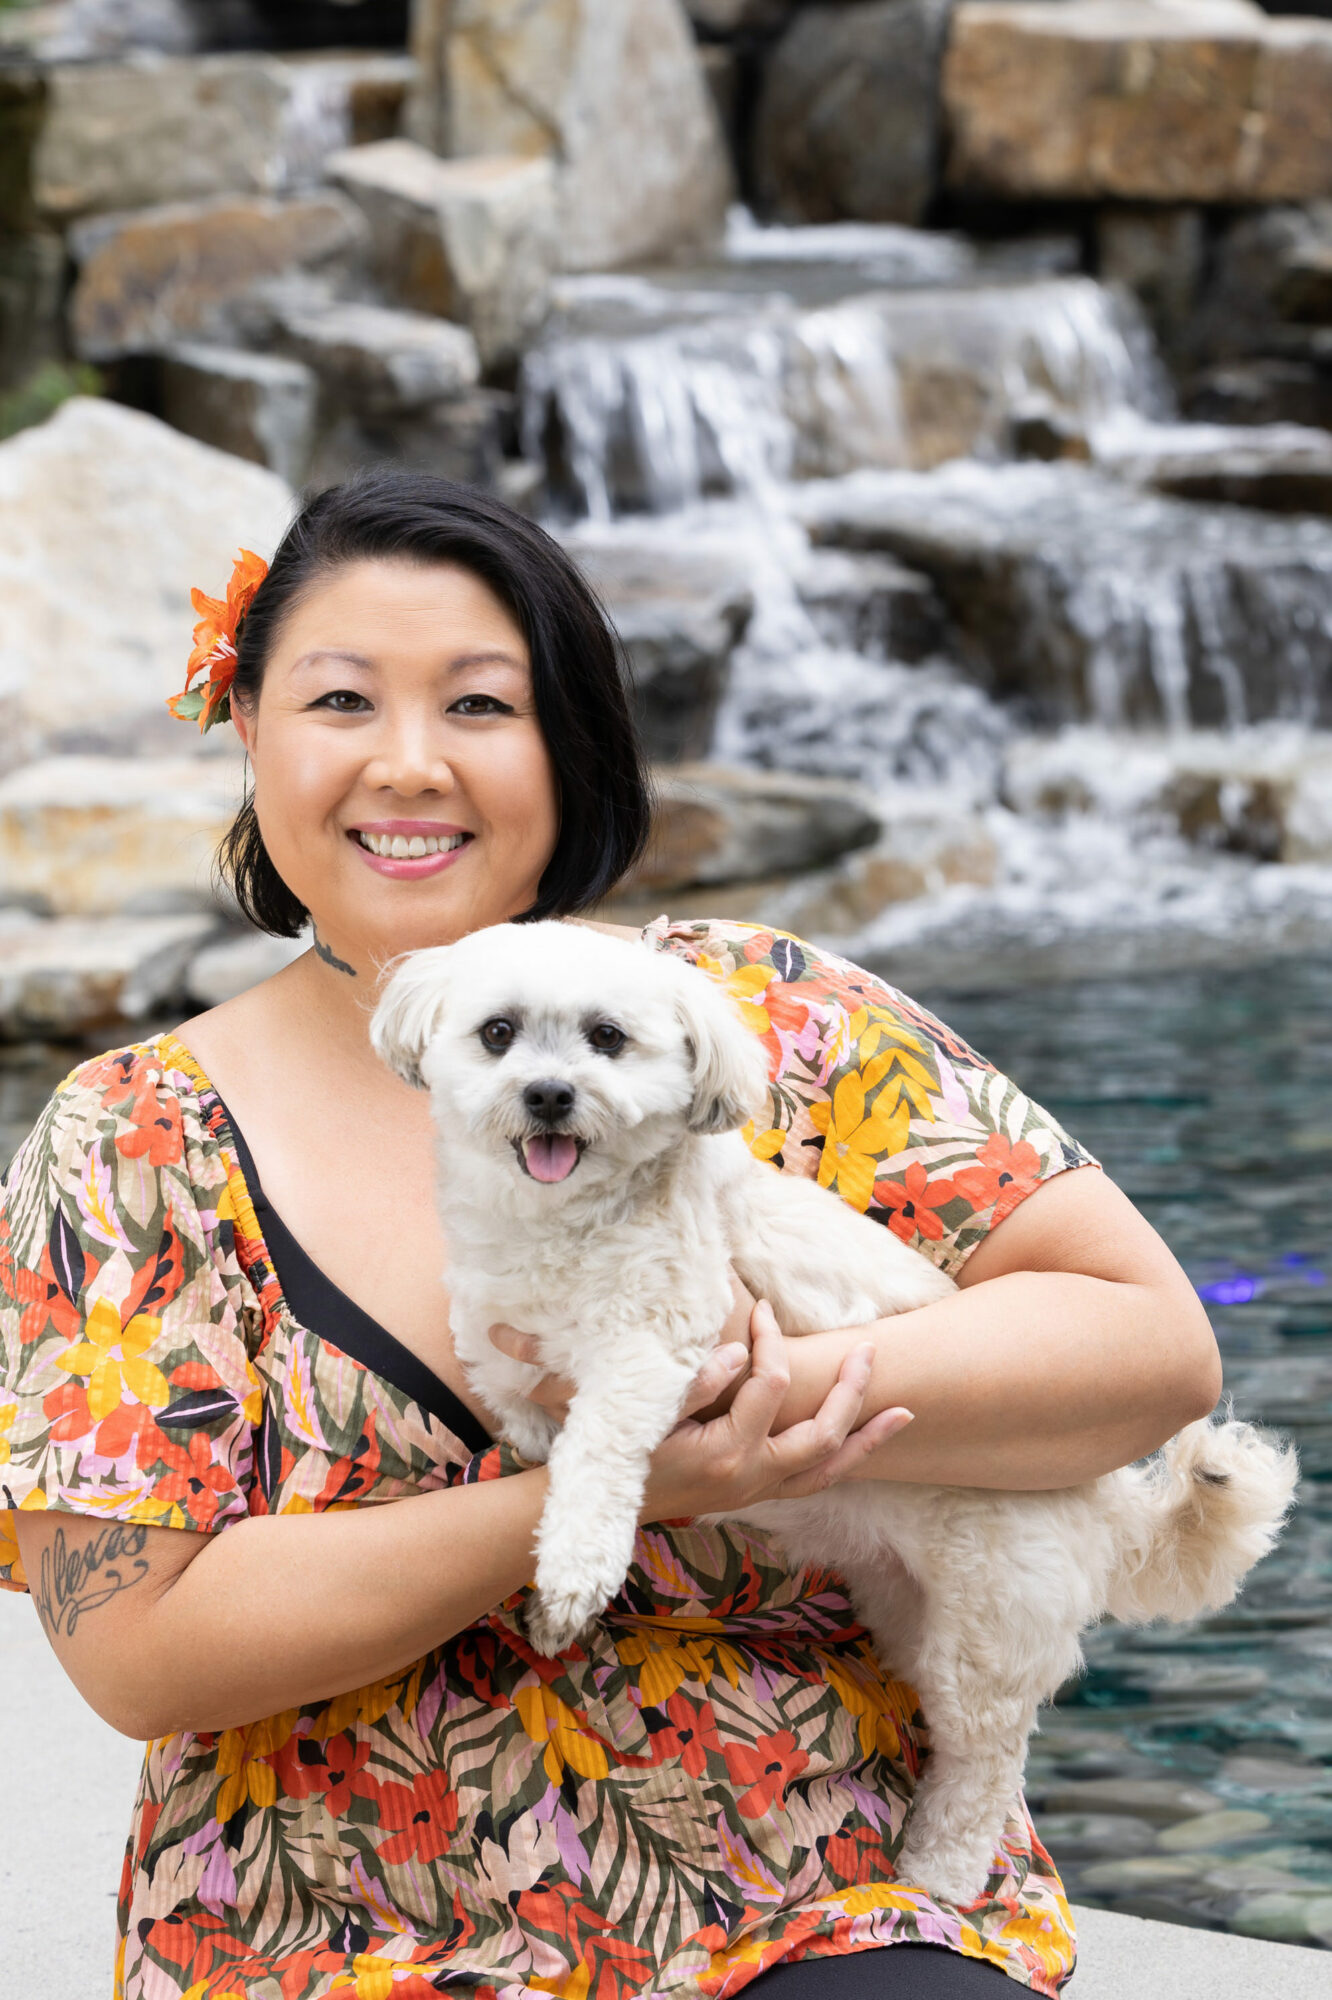 Membro do Empowered Voices vestindo uma blusa floral multicolorida, segurando um cachorrinho branco com uma cachoeira de pedras de várias camadas ao fundo